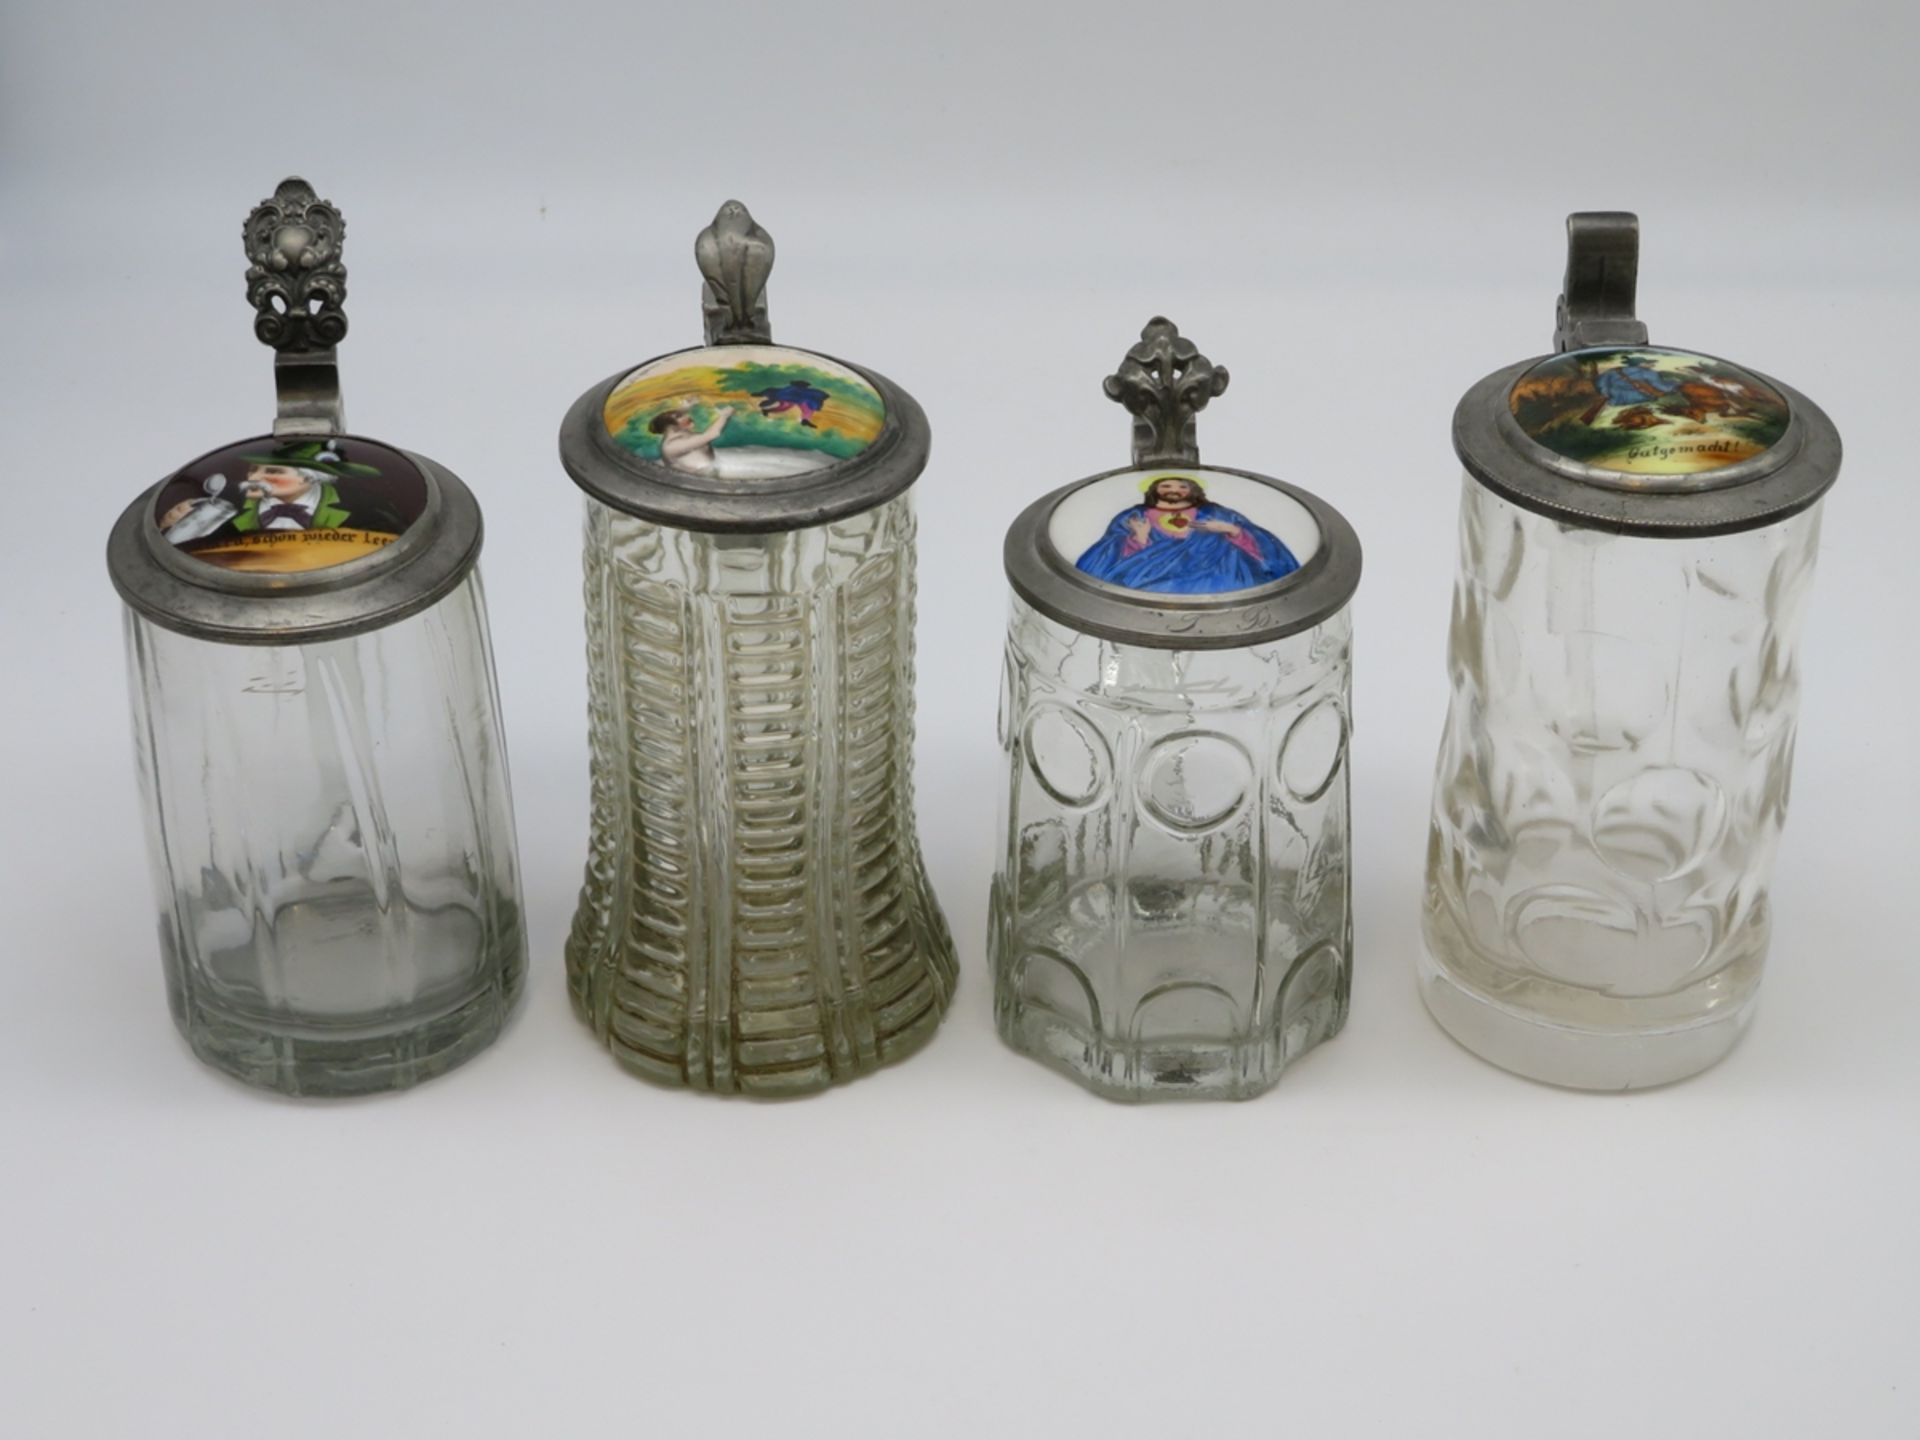 4 diverse Bierkrüge, 19. Jahrhundert, farbloses Glas, bemalte Porzellandeckel in Zinnmontur, ca. h 